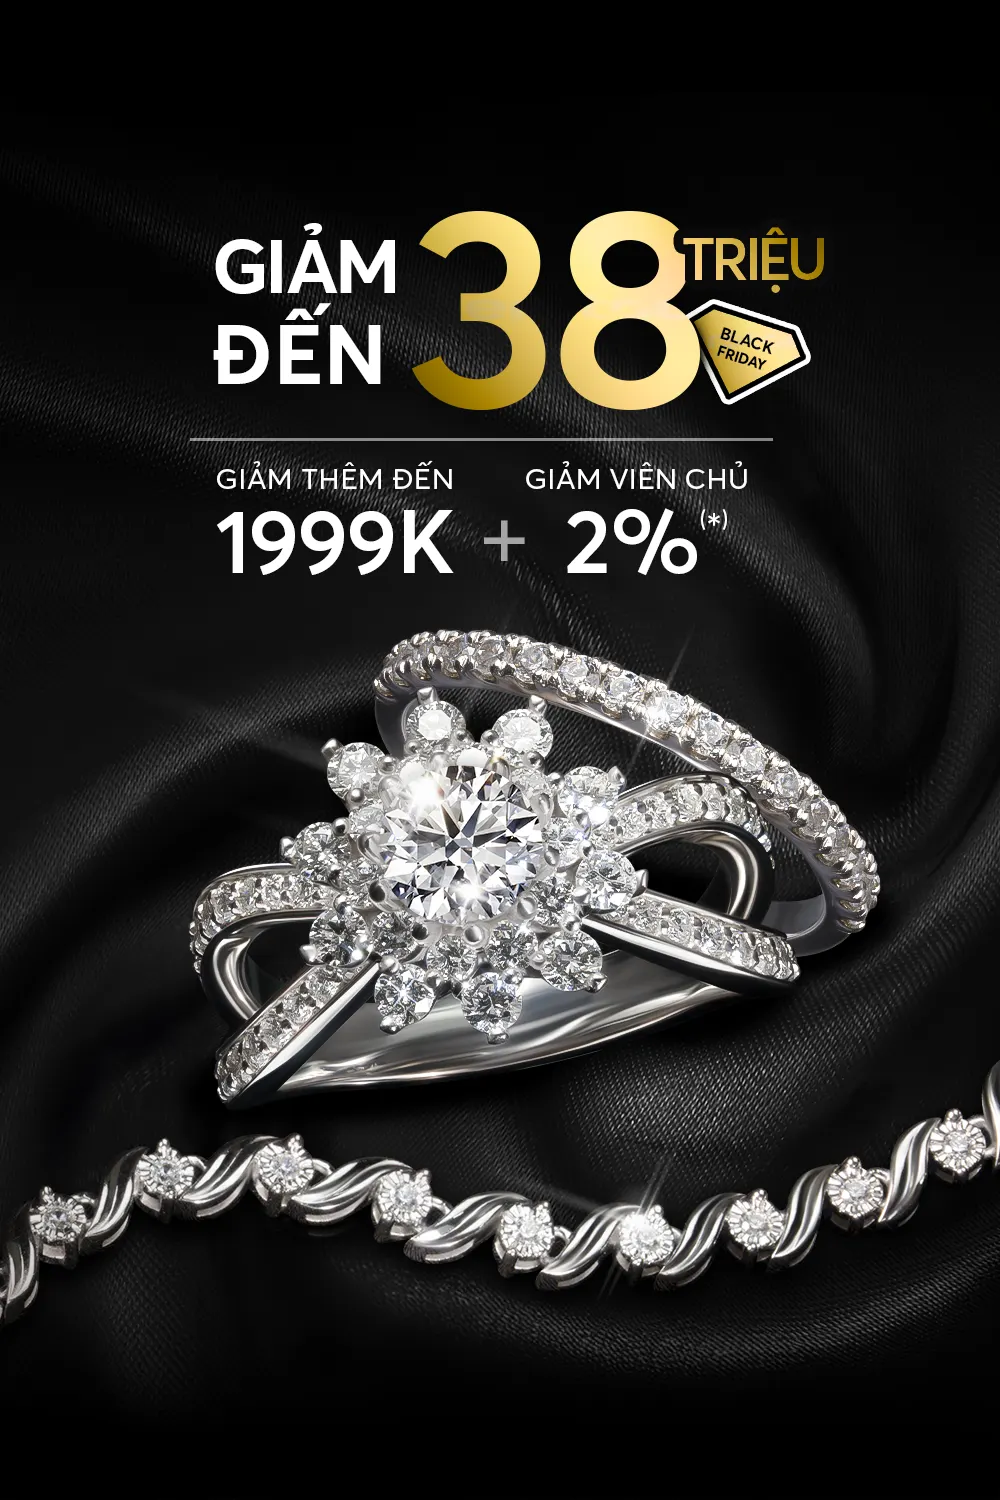 Black Friday - Chọn mua trang sức kim cương đẹp giá tốt với chương trình ưu đãi tại Tierra